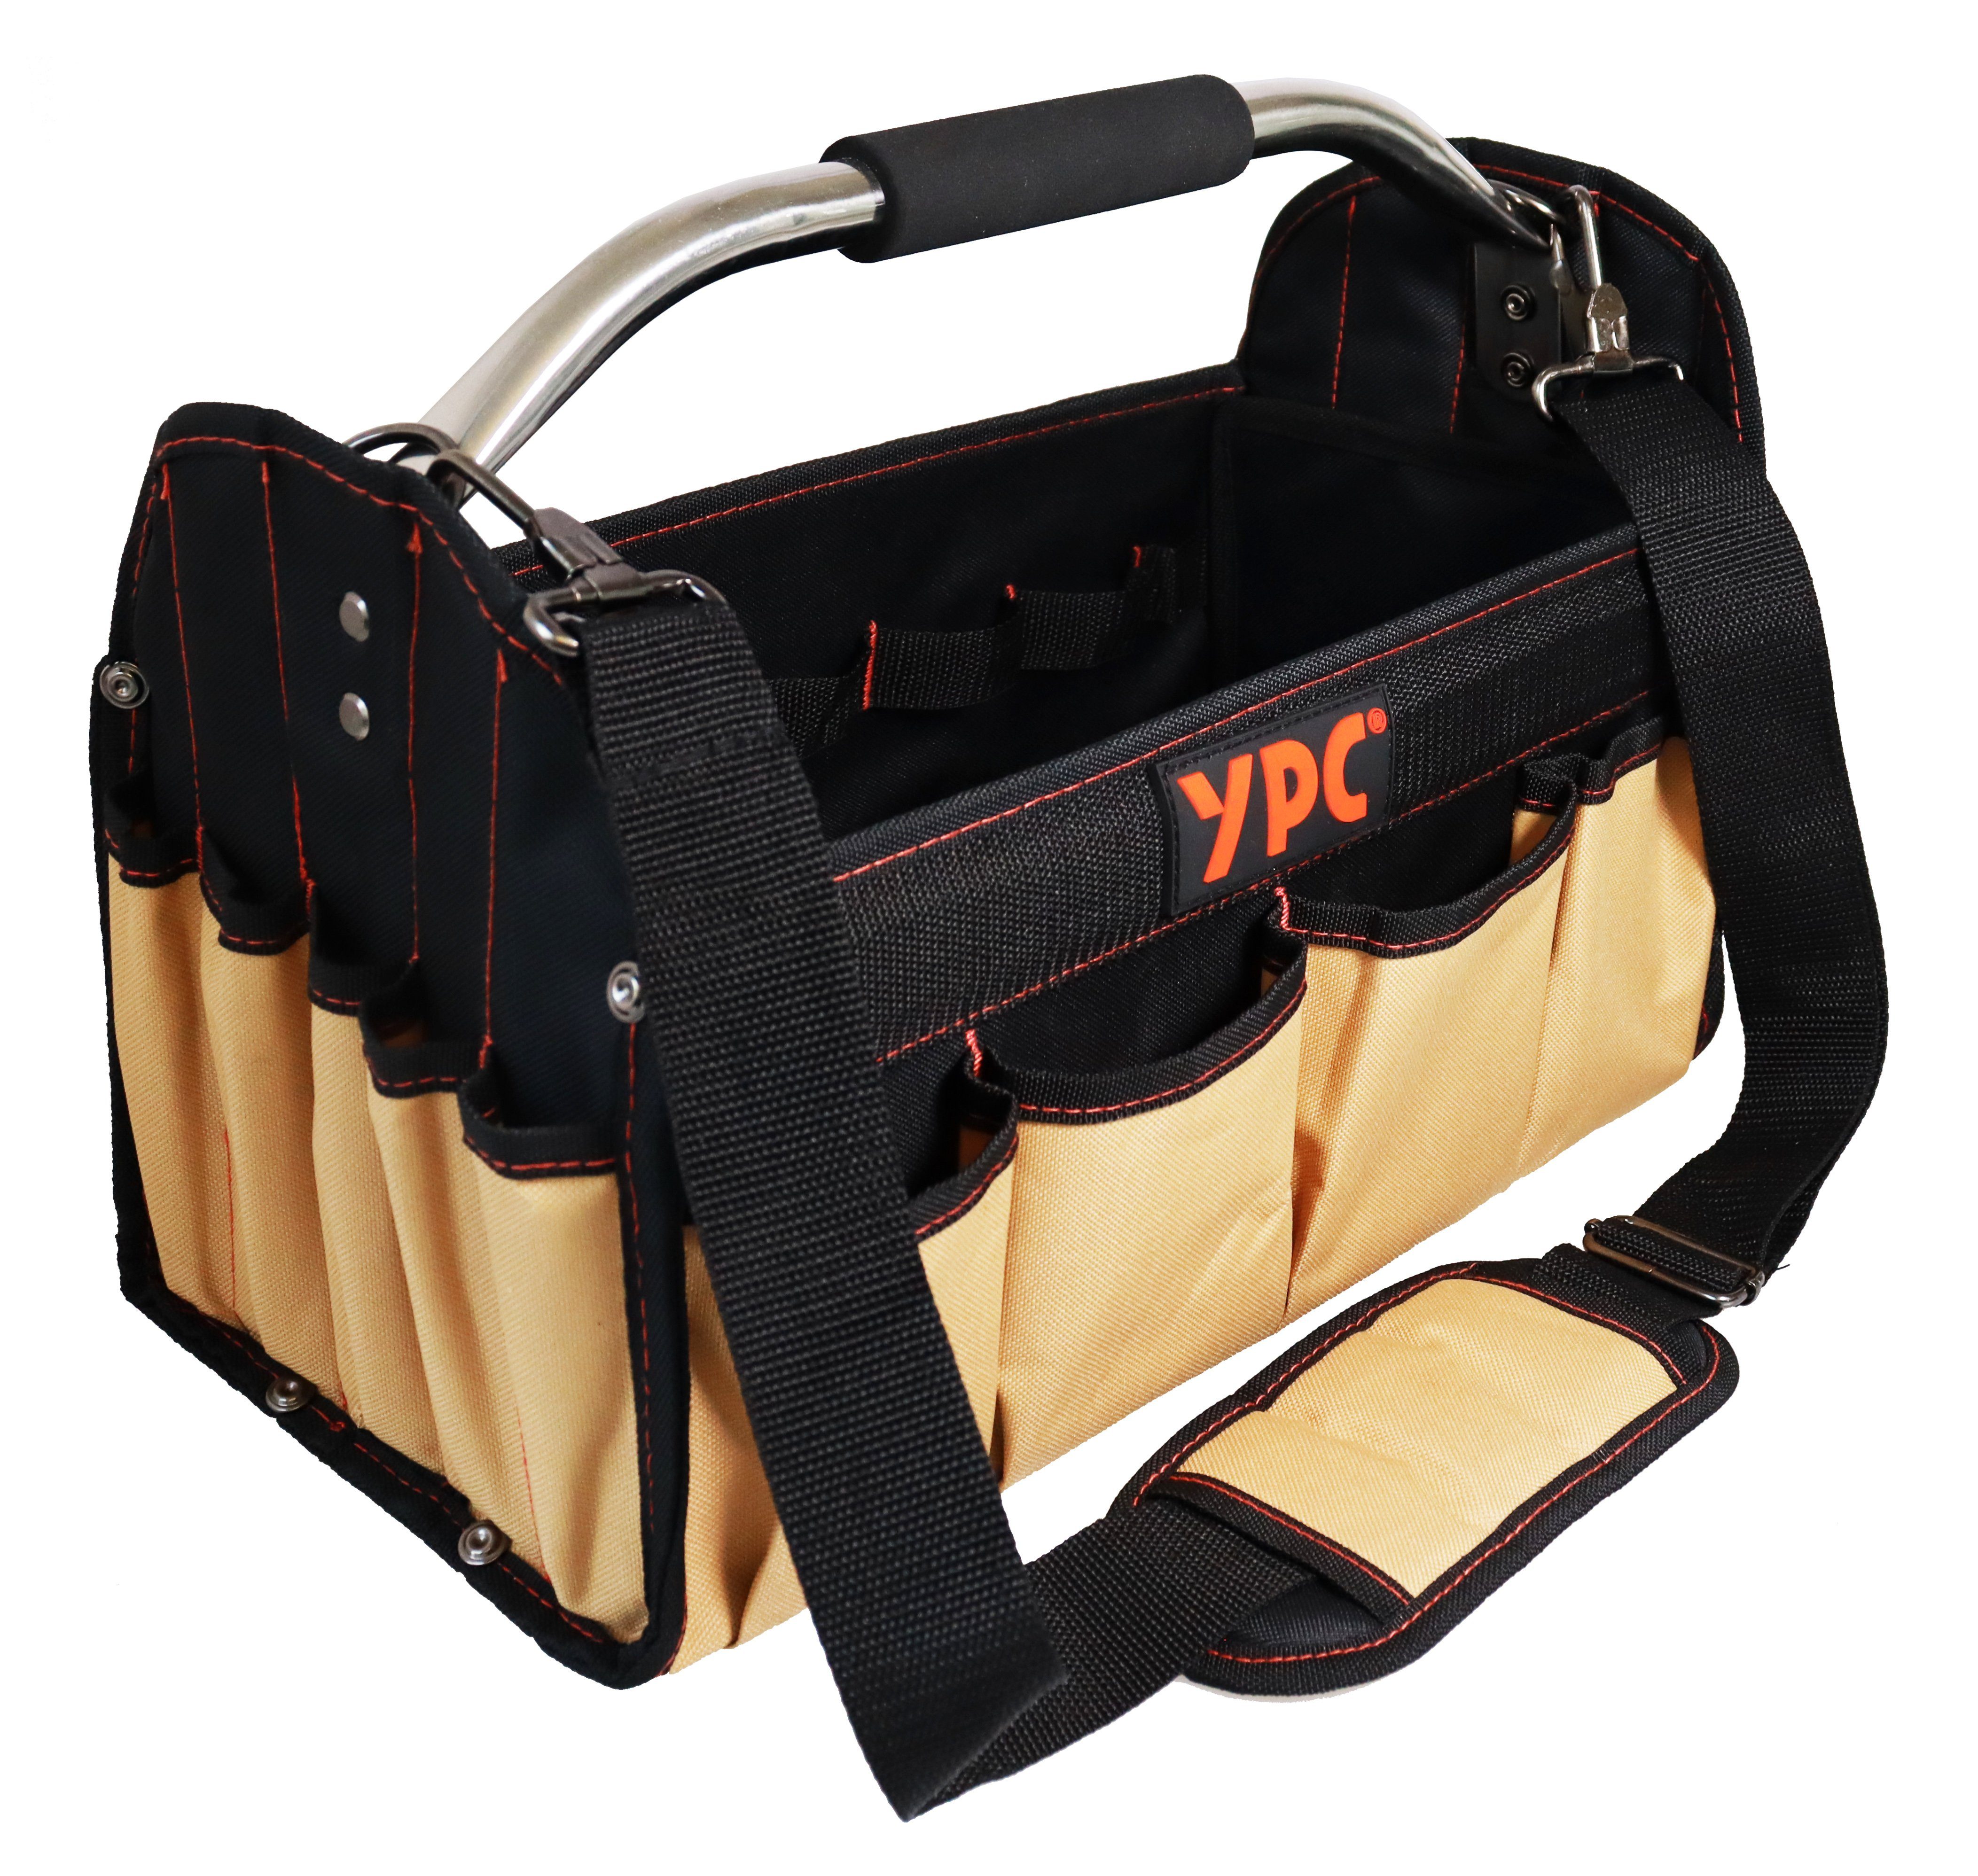 YPC Werkzeugtasche "Carrier" Werkzeugkorb XL, offene Werkzeugtasche mit Metallgriff, 40,5x30x19,5cm, 20 kg Tragkraft, Tragetasche für Werkzeug mit Haltern, Fächern und Einschüben Beige